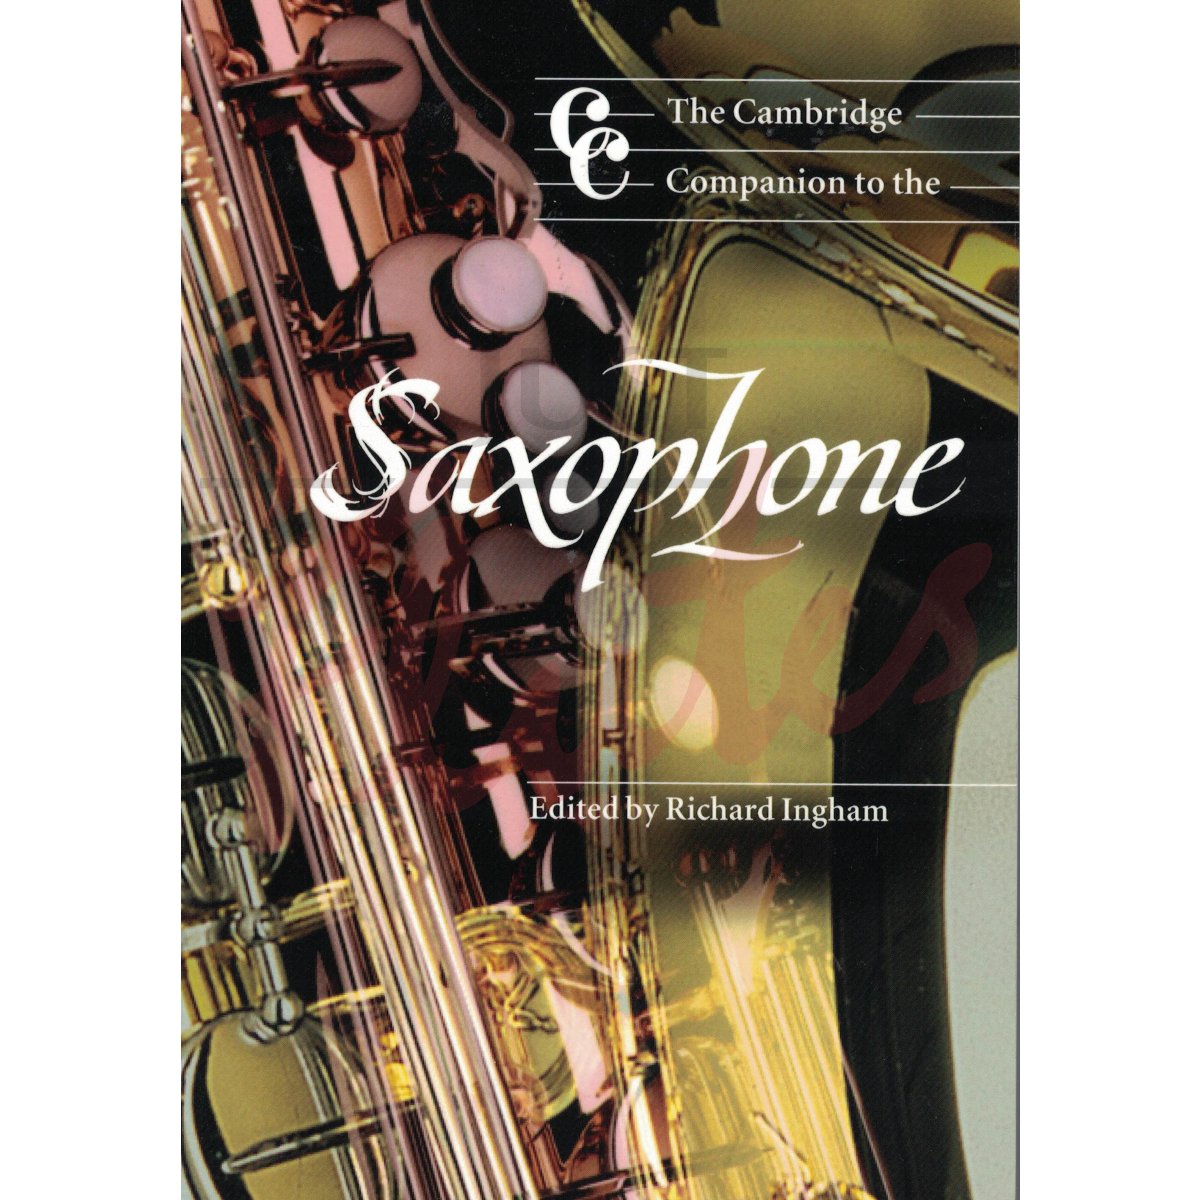 The Cambridge Companion to the Sax